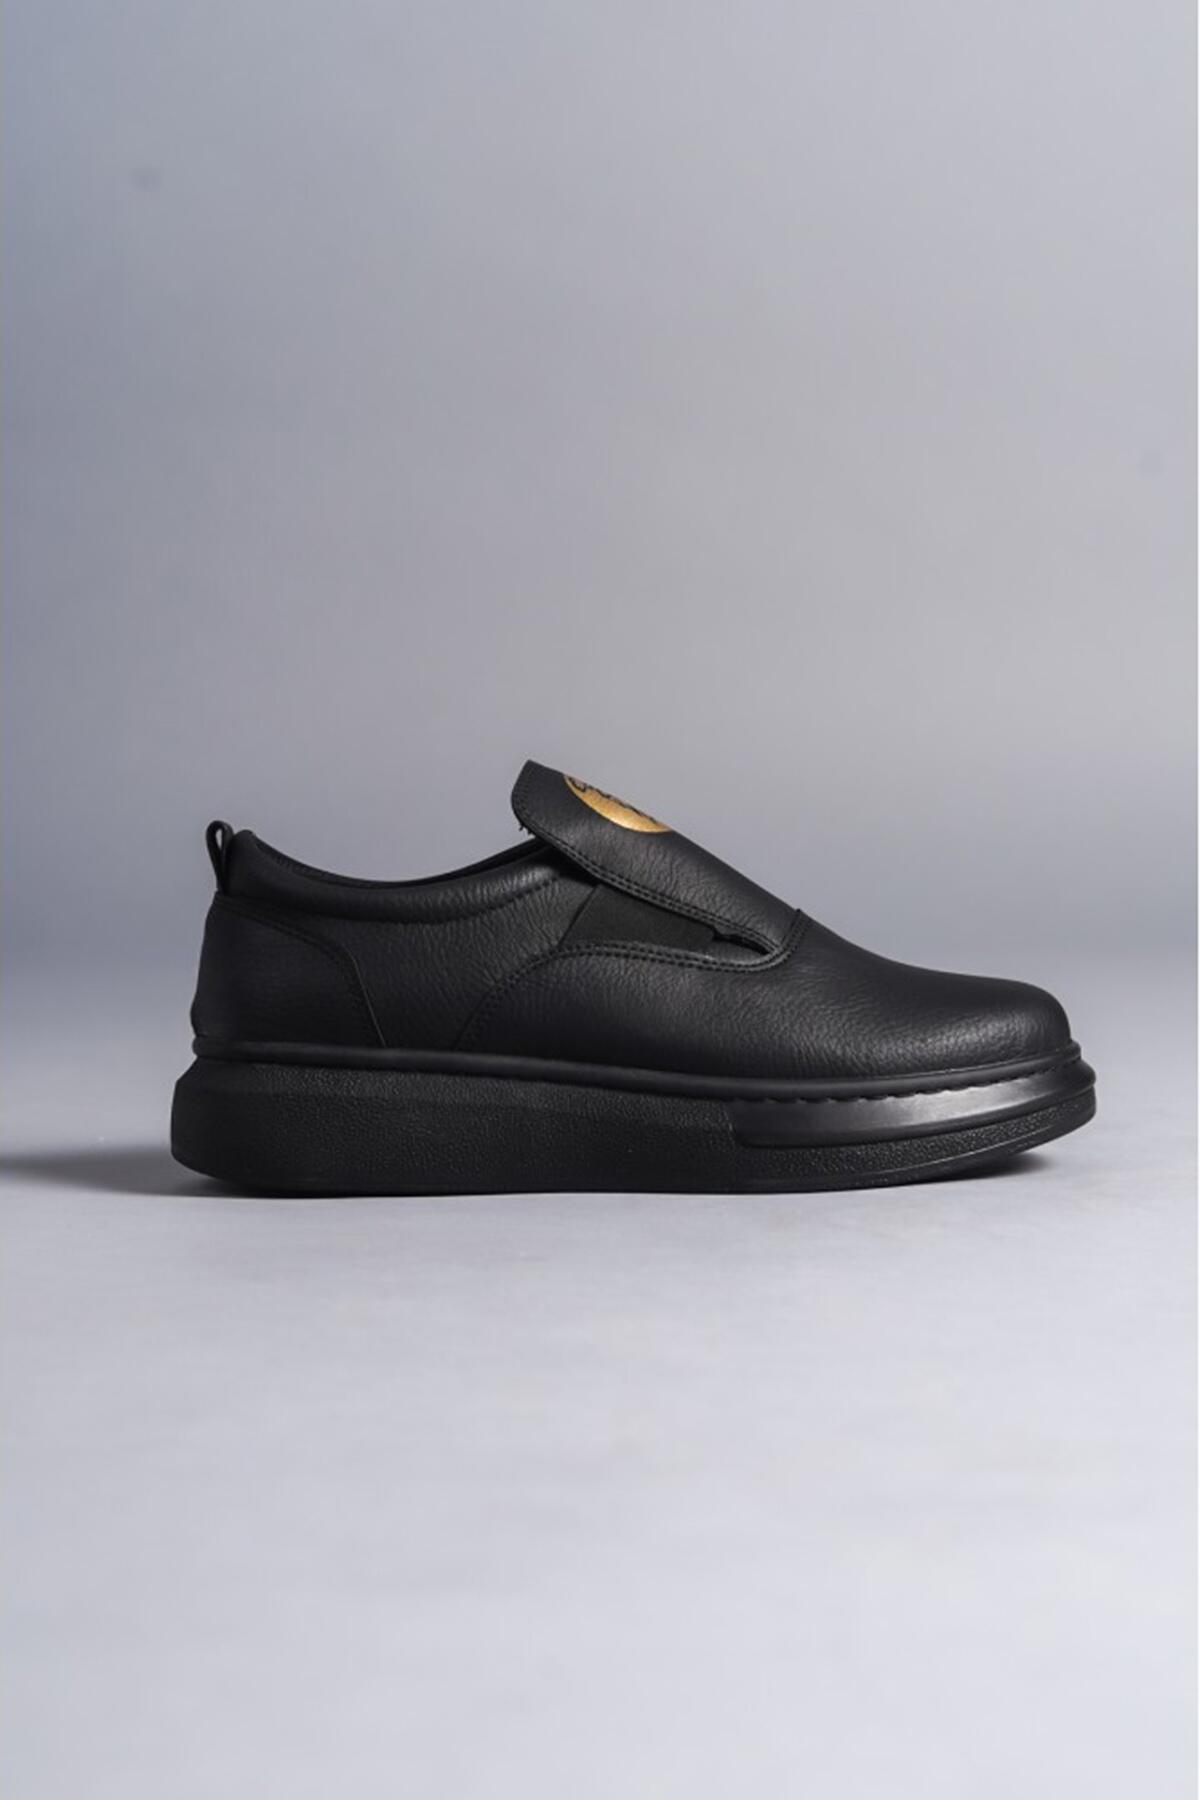 Slw-161 Kömür Erkek Spor Günlük Ayakkabı Siyah | Patırtı